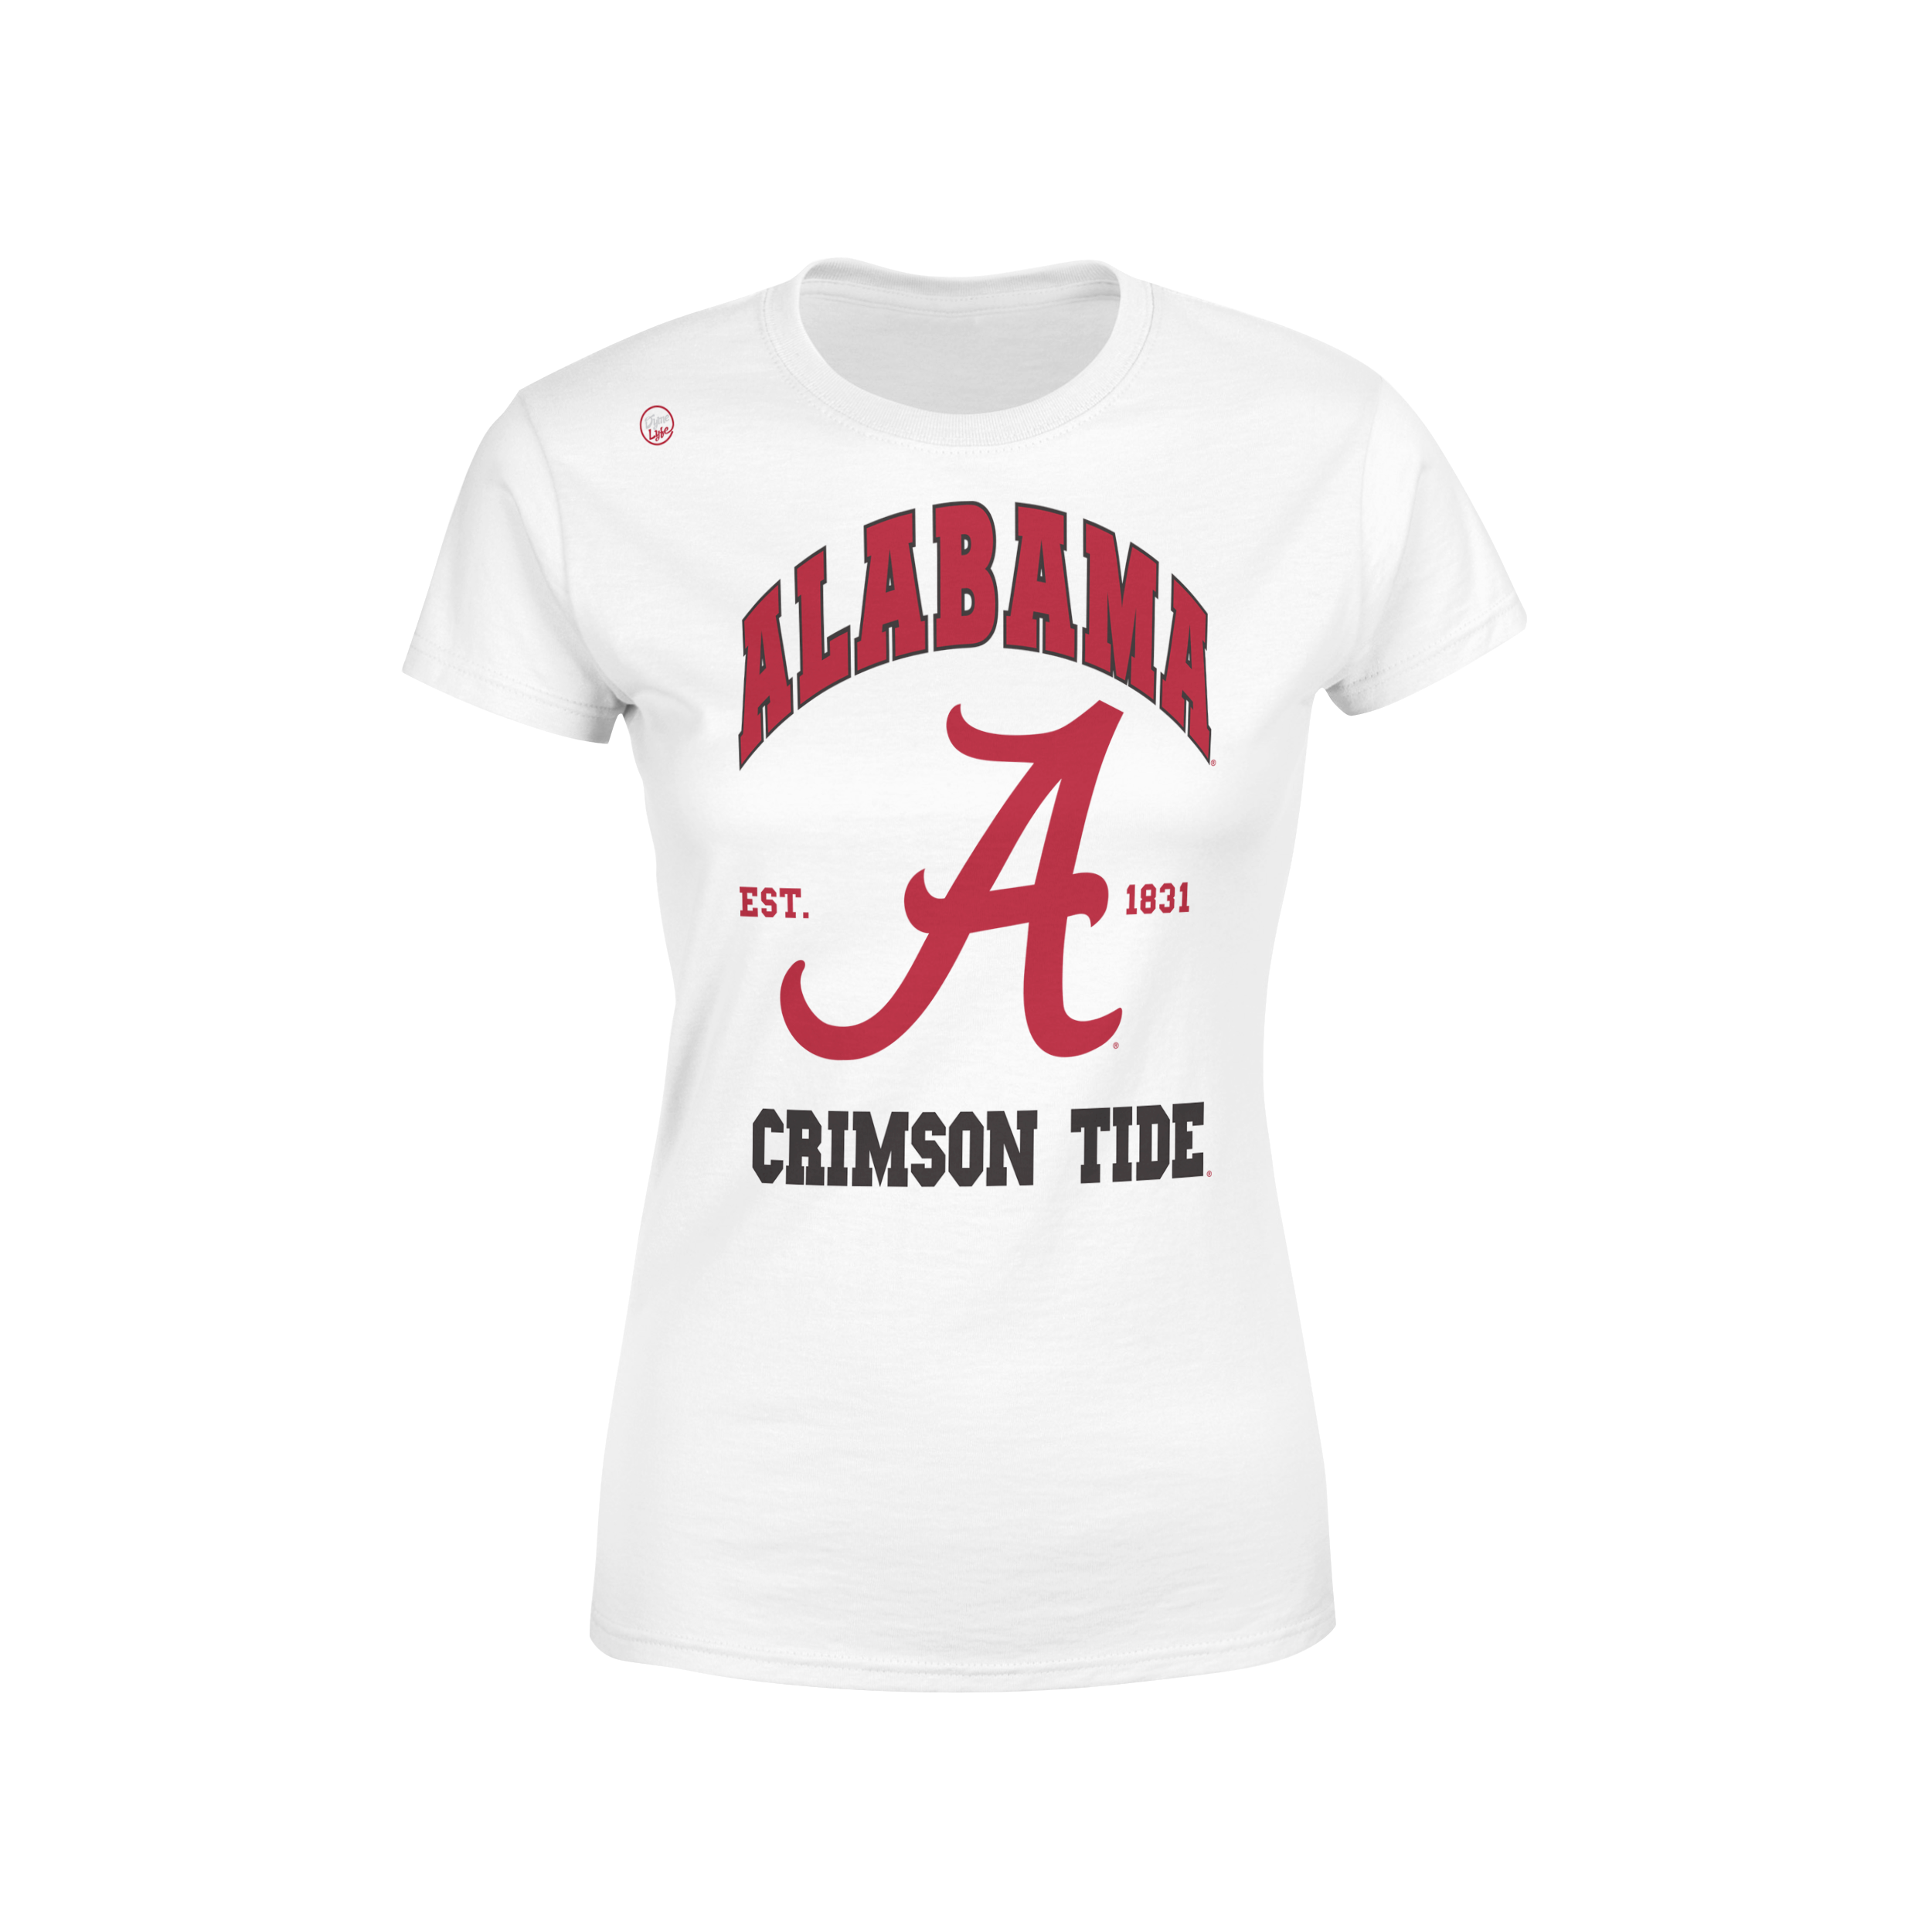 Alabama Crimson Tide Women’s Est. Tee